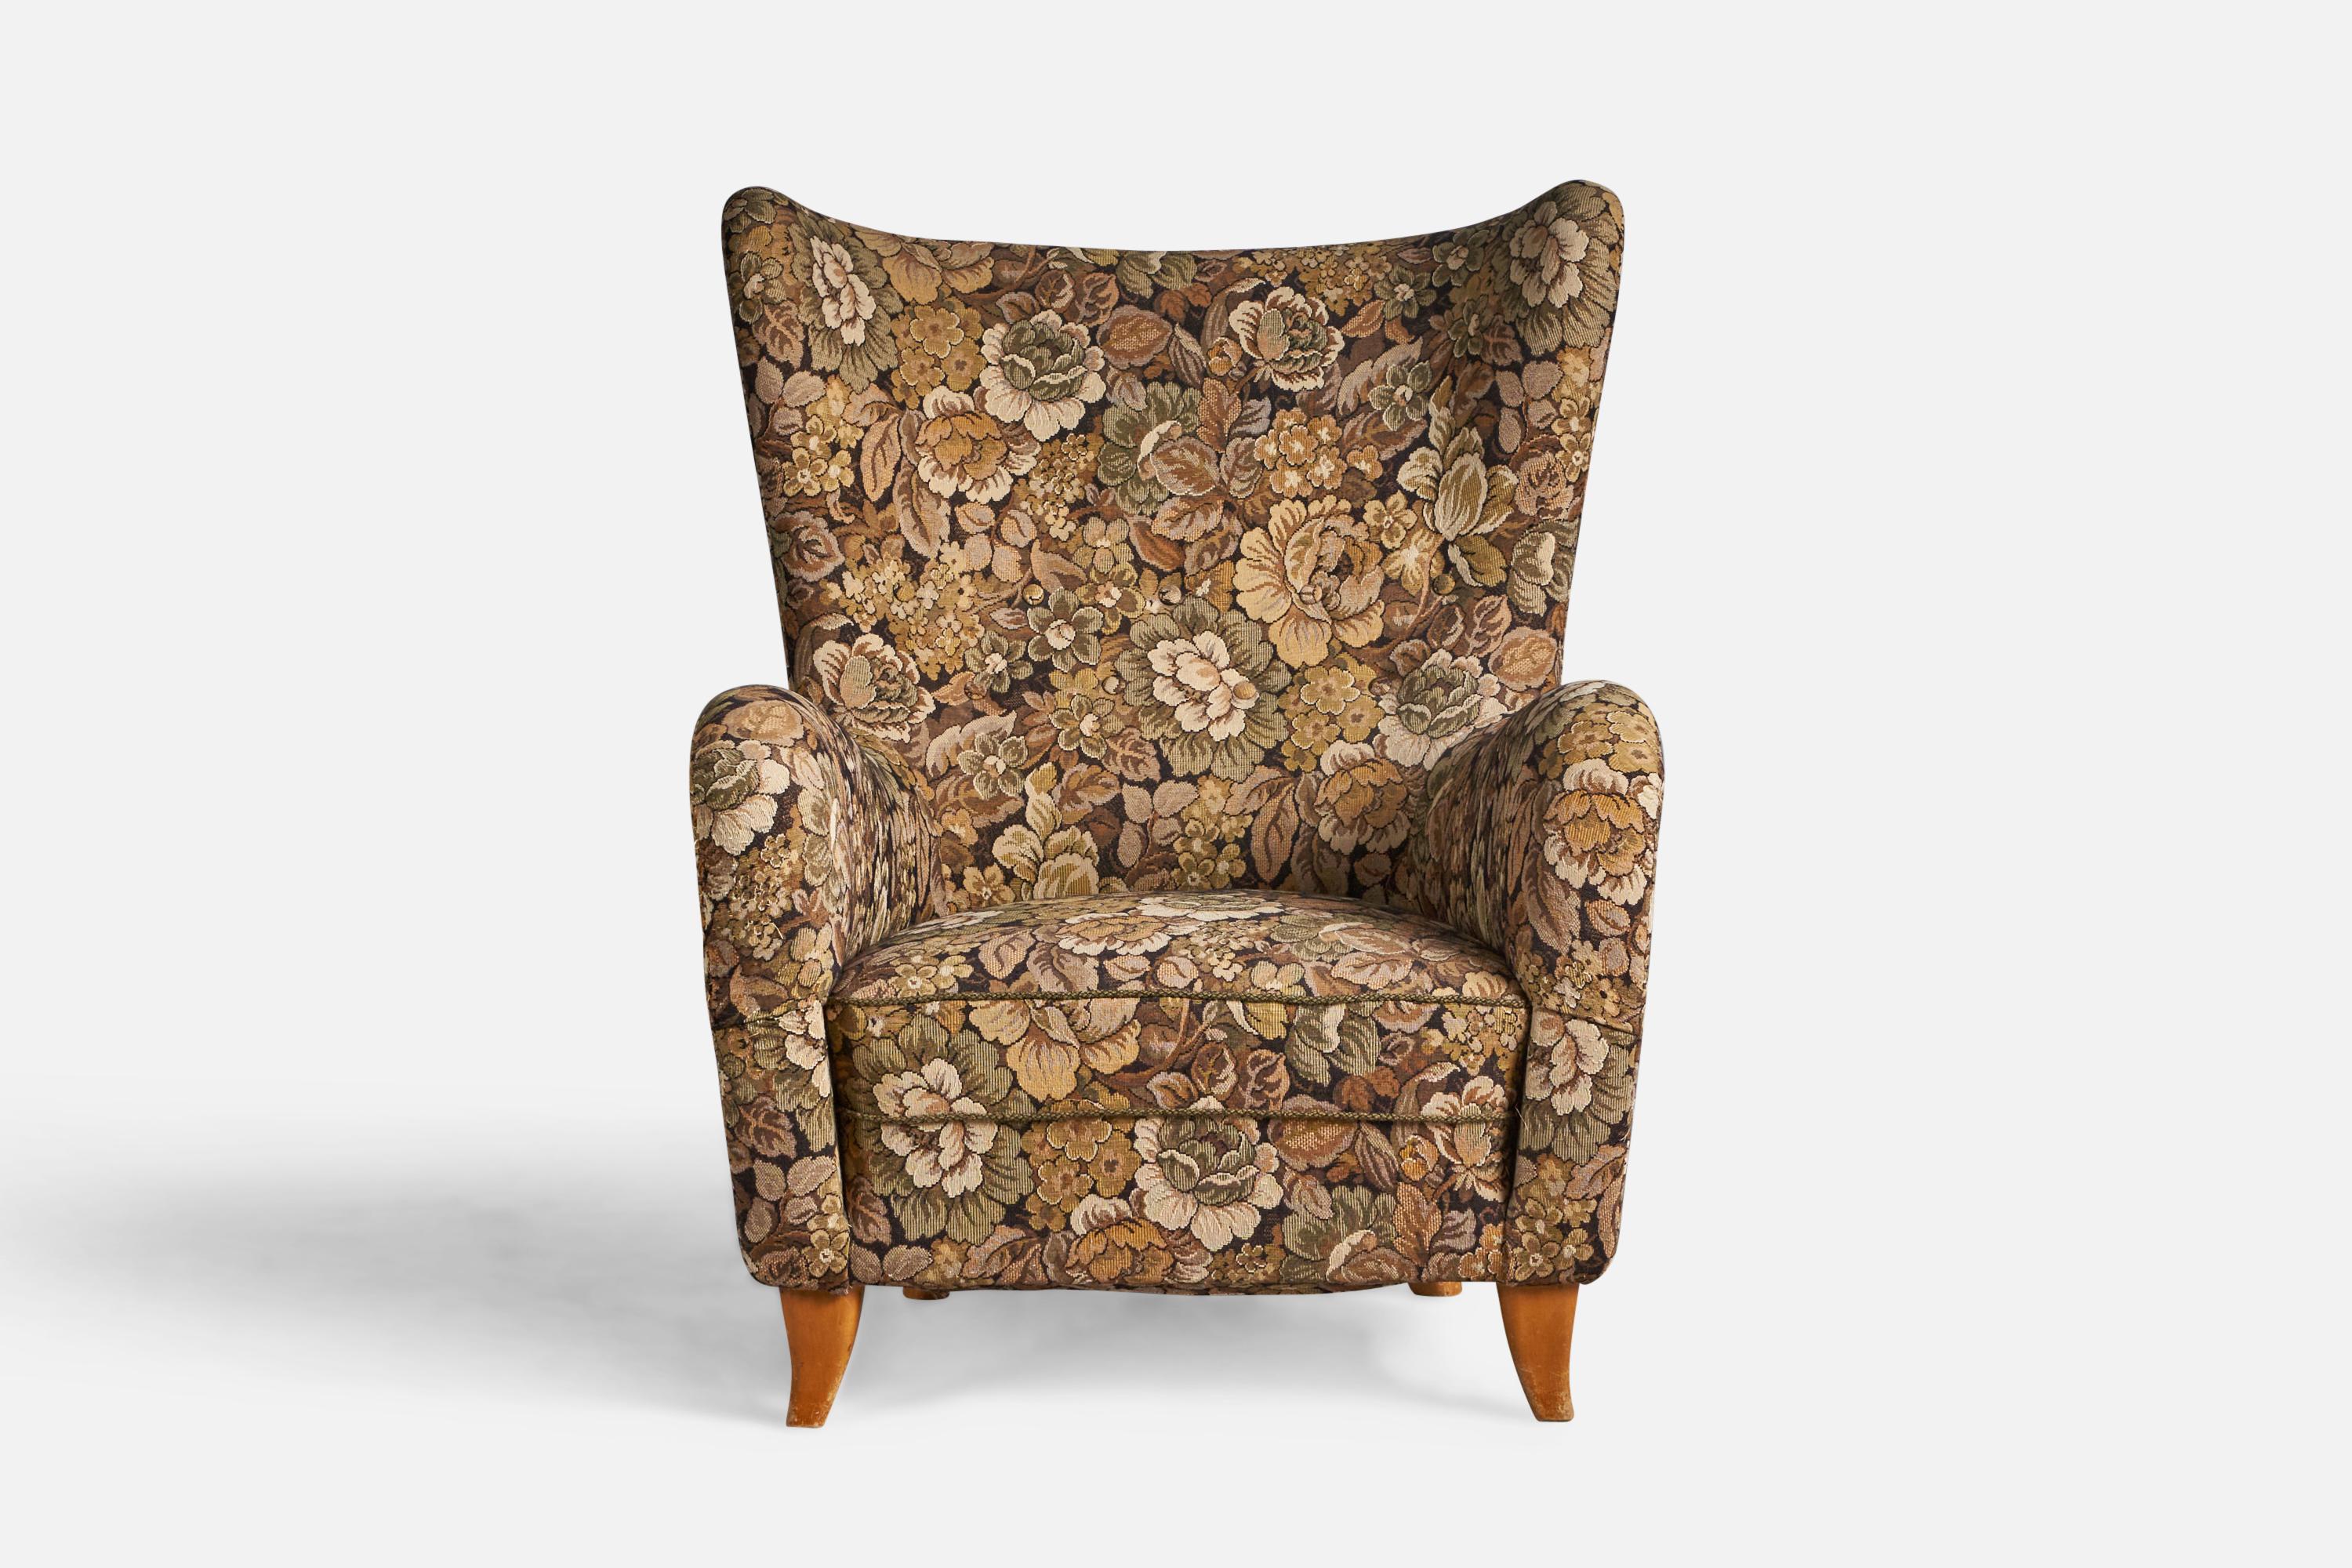 Scandinavian Modern Olle Sjögren, Lounge Chair, Fabric, Wood, Sweden, 1940s